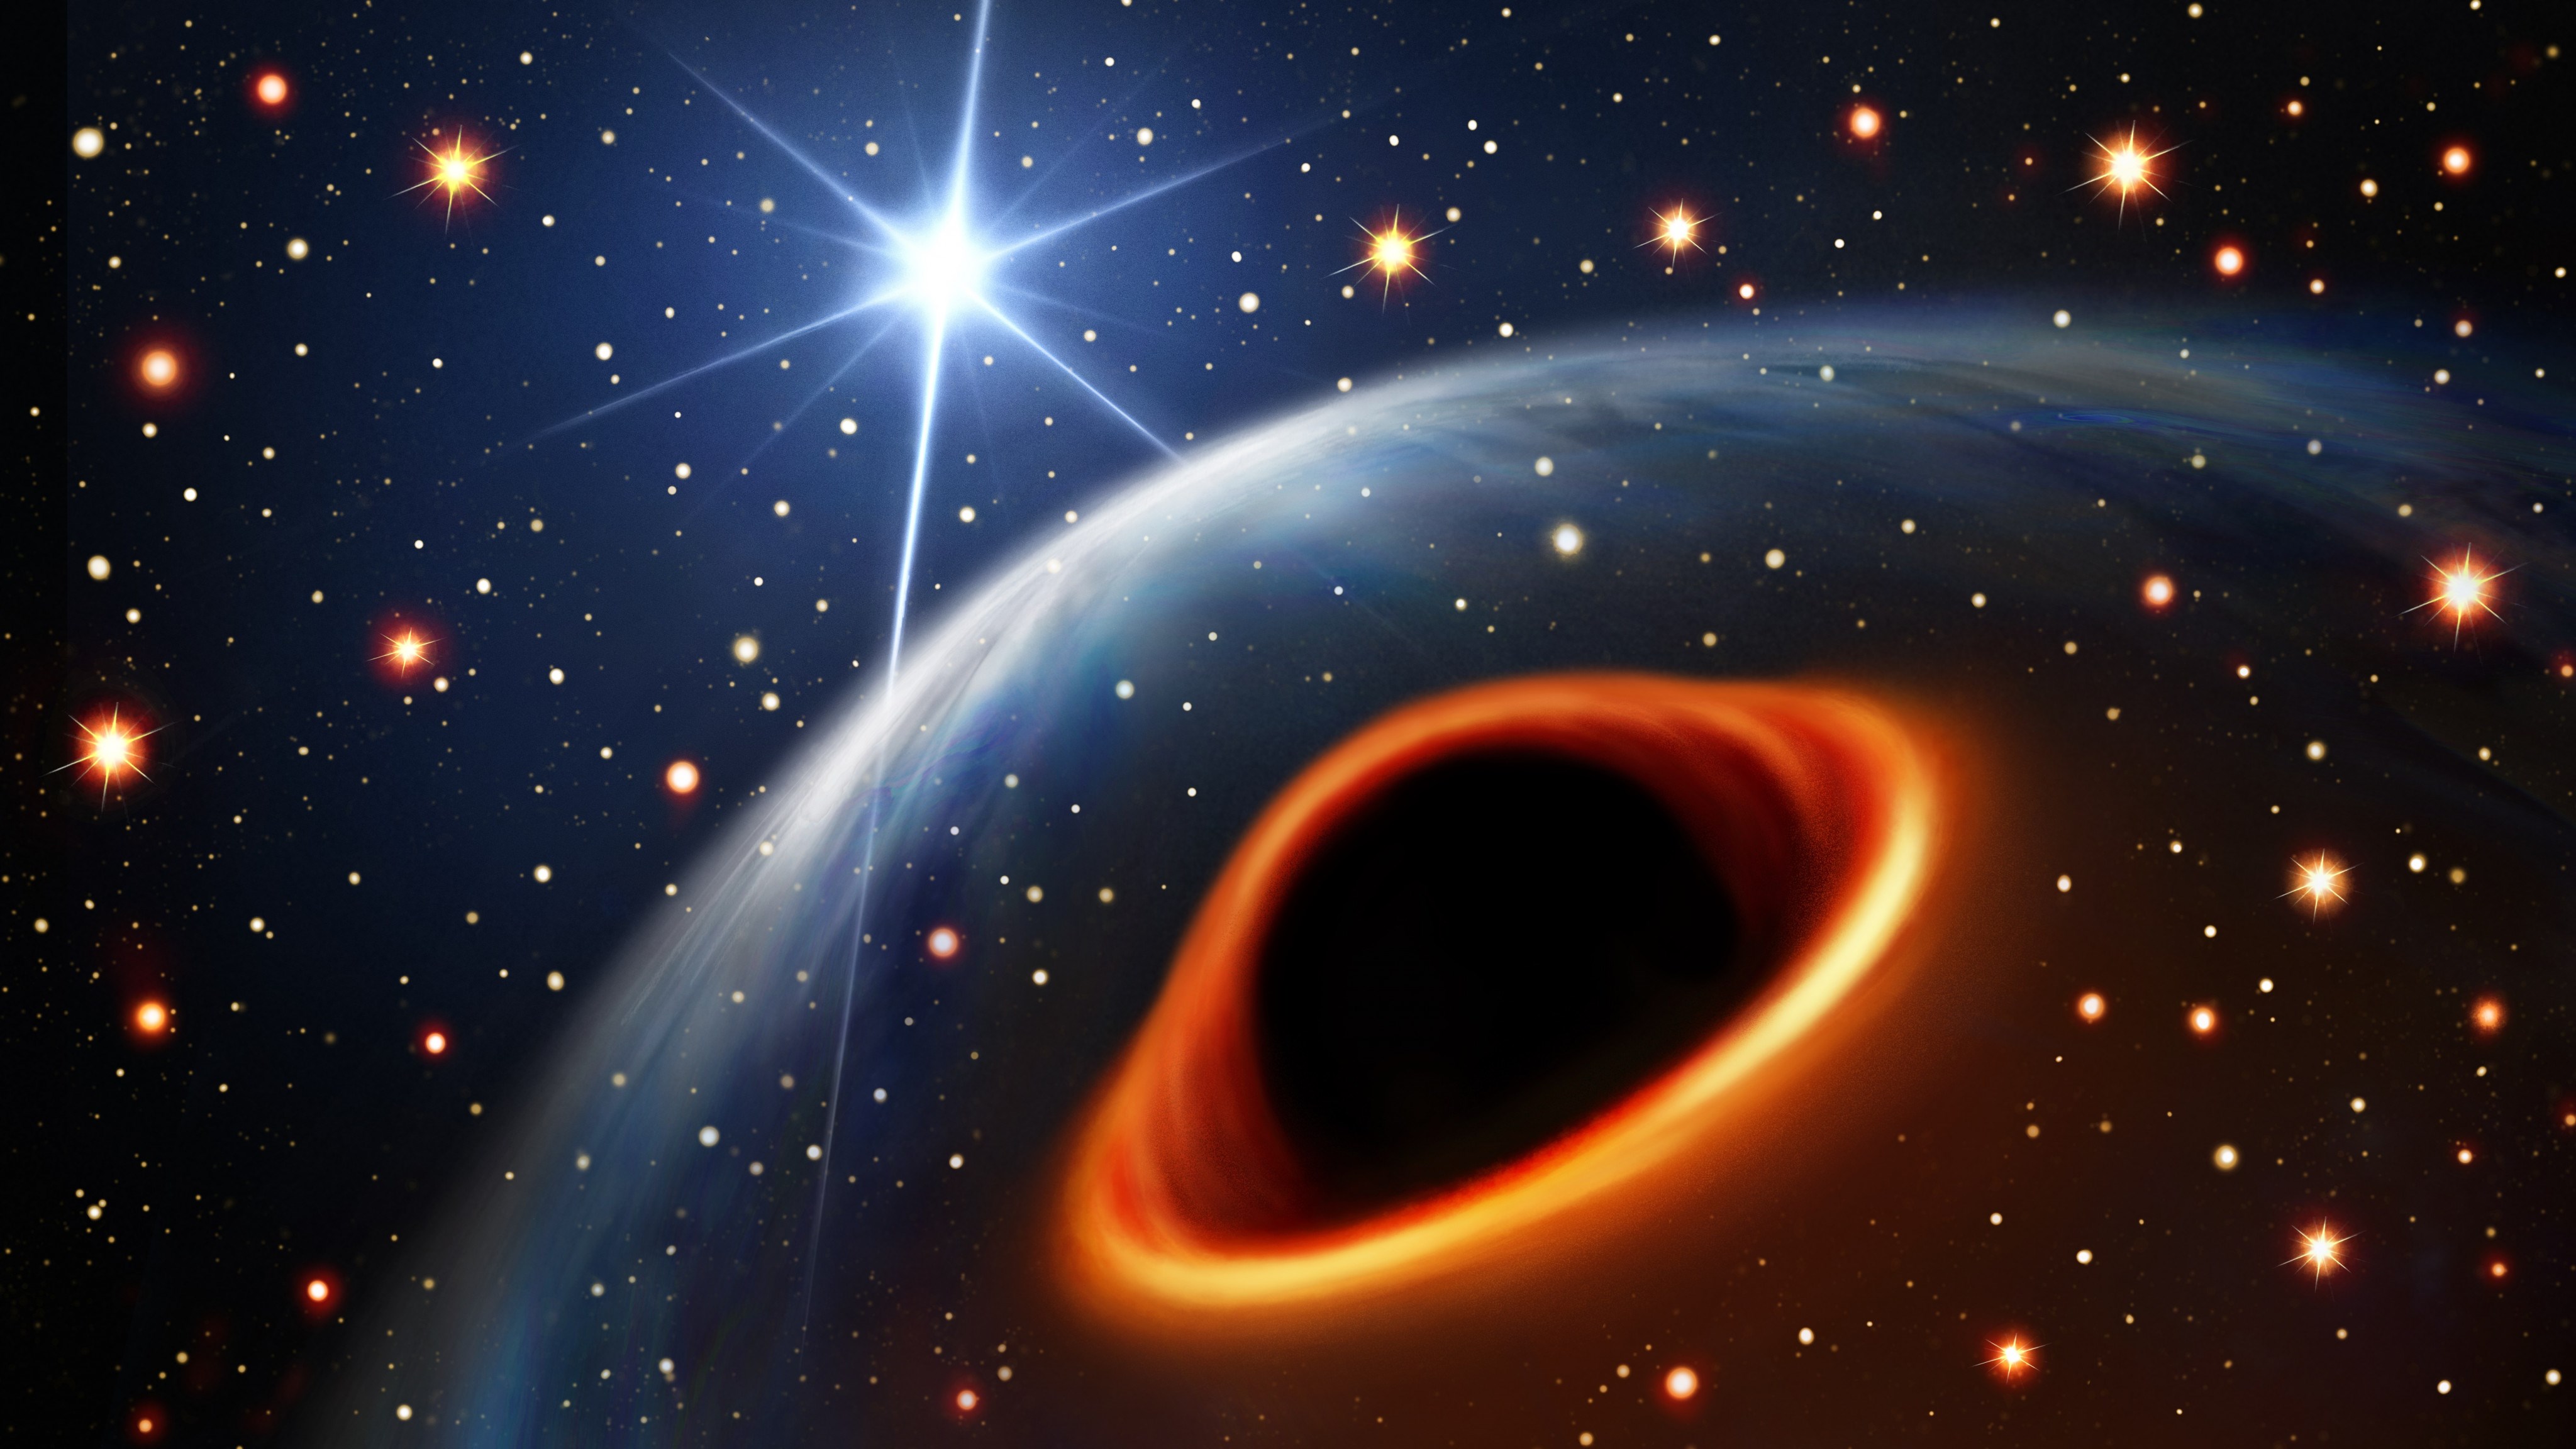 Şimdiye kadar görülen “en hafif kara delik” keşfedilmiş olabilir